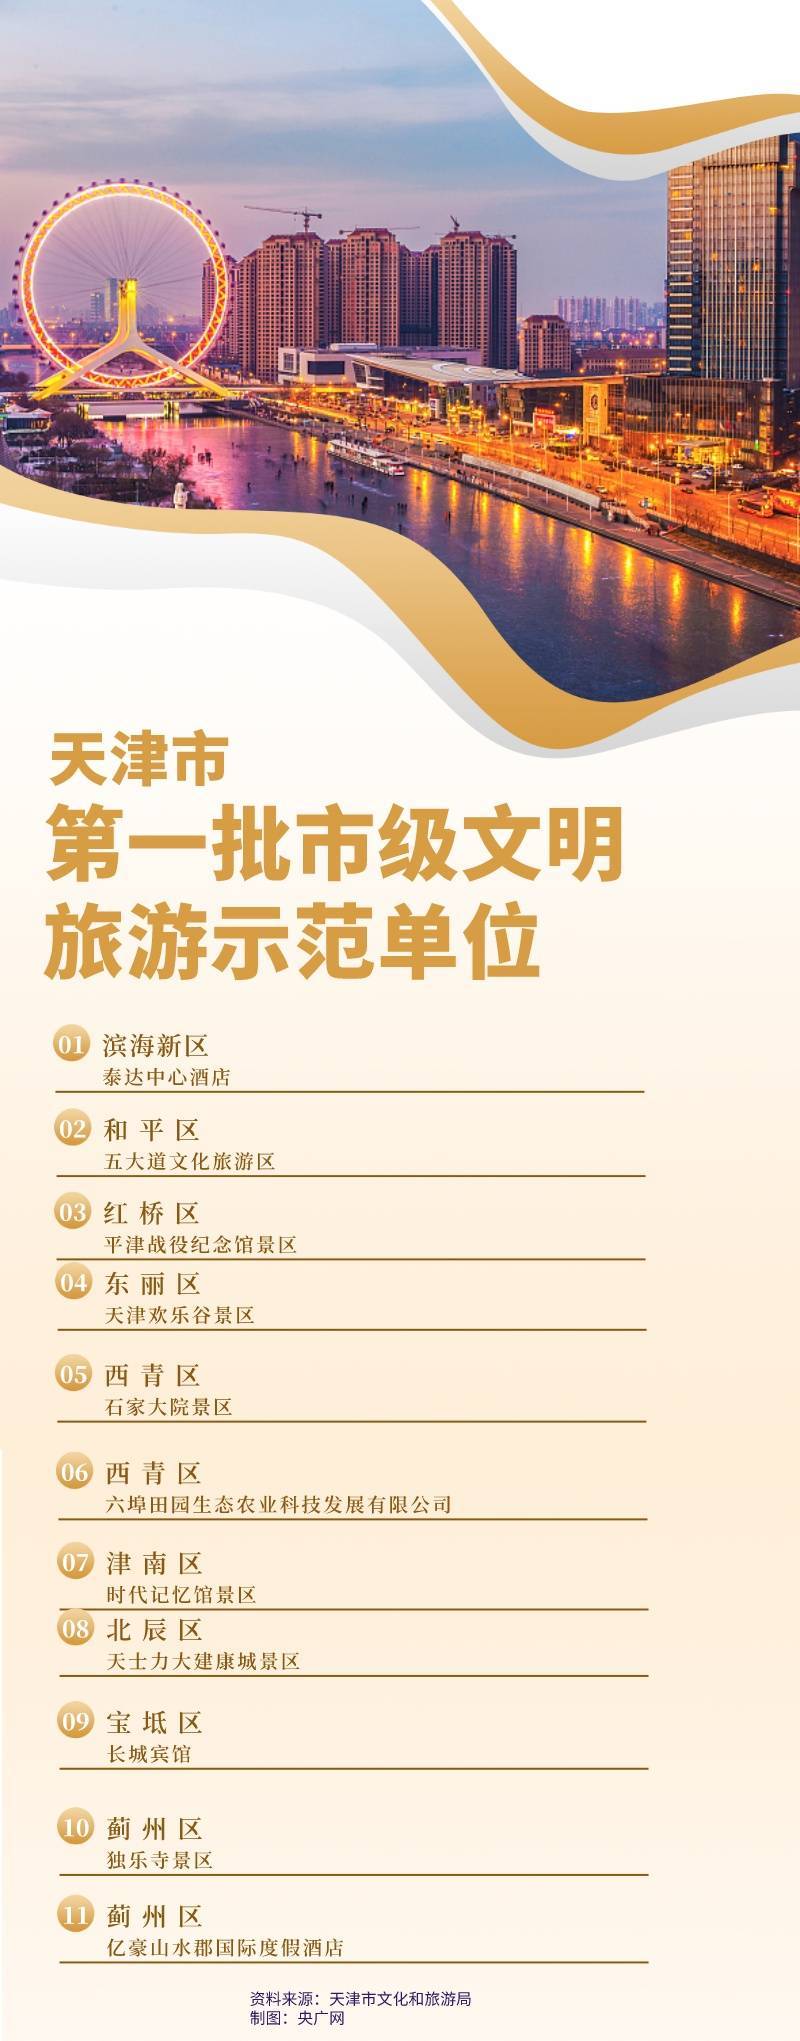 示范|天津市11家单位入选第一批市级文明旅游示范单位